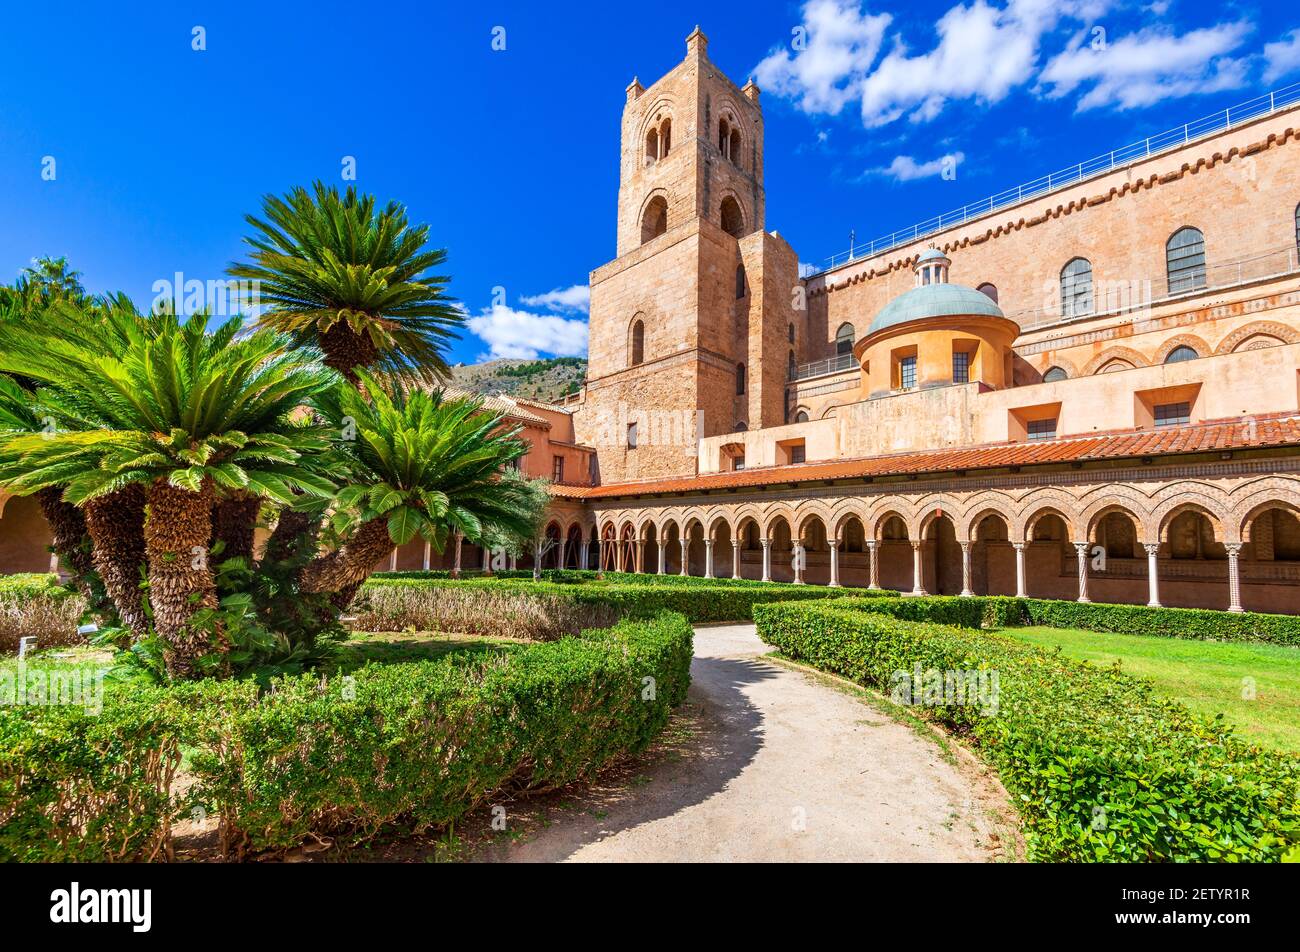 Monreale, Palermo. Normannisch-byzantinische Kathedrale in Sizilien, Italien mit Blick auf Palermo Stadt. Stockfoto